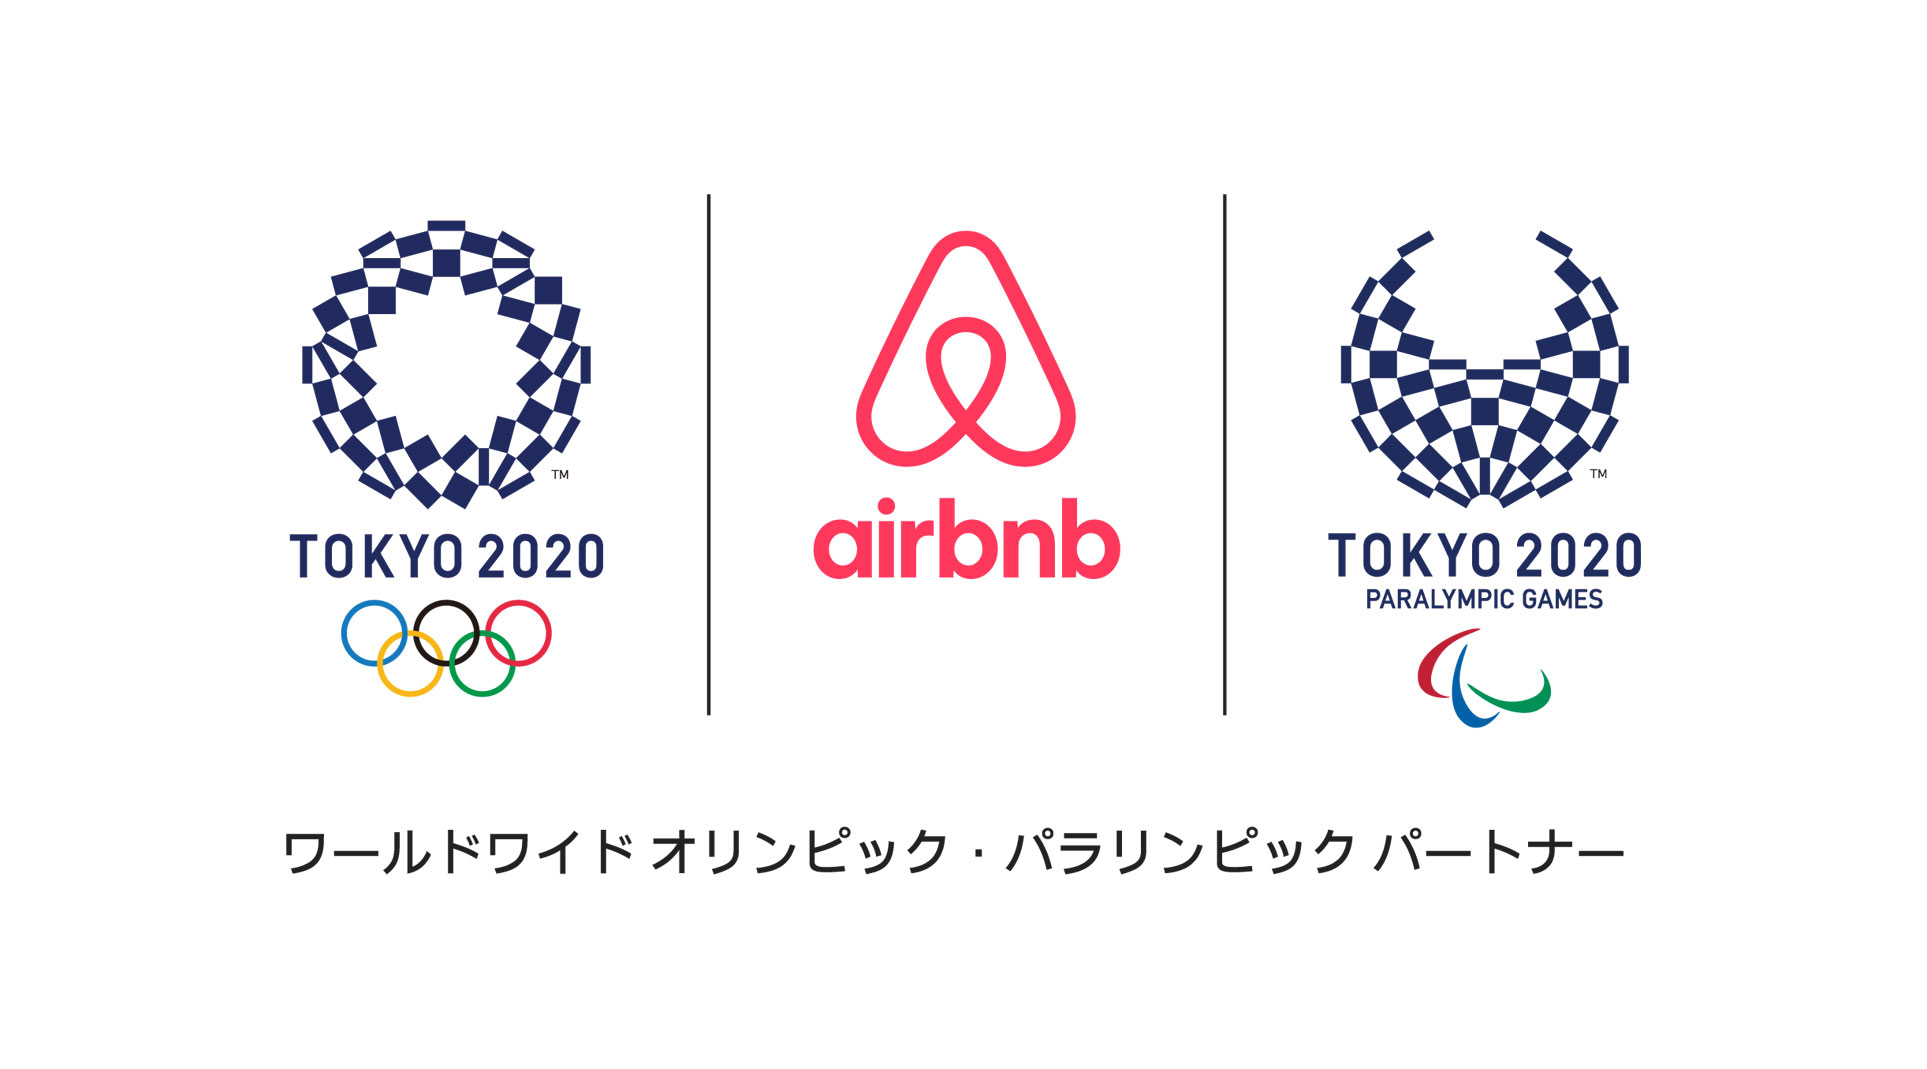 射撃競技の開催場所となる埼玉県和光市とairbnbが 東京オリンピック パラリンピック競技大会期間中の イベントホームステイ で連携